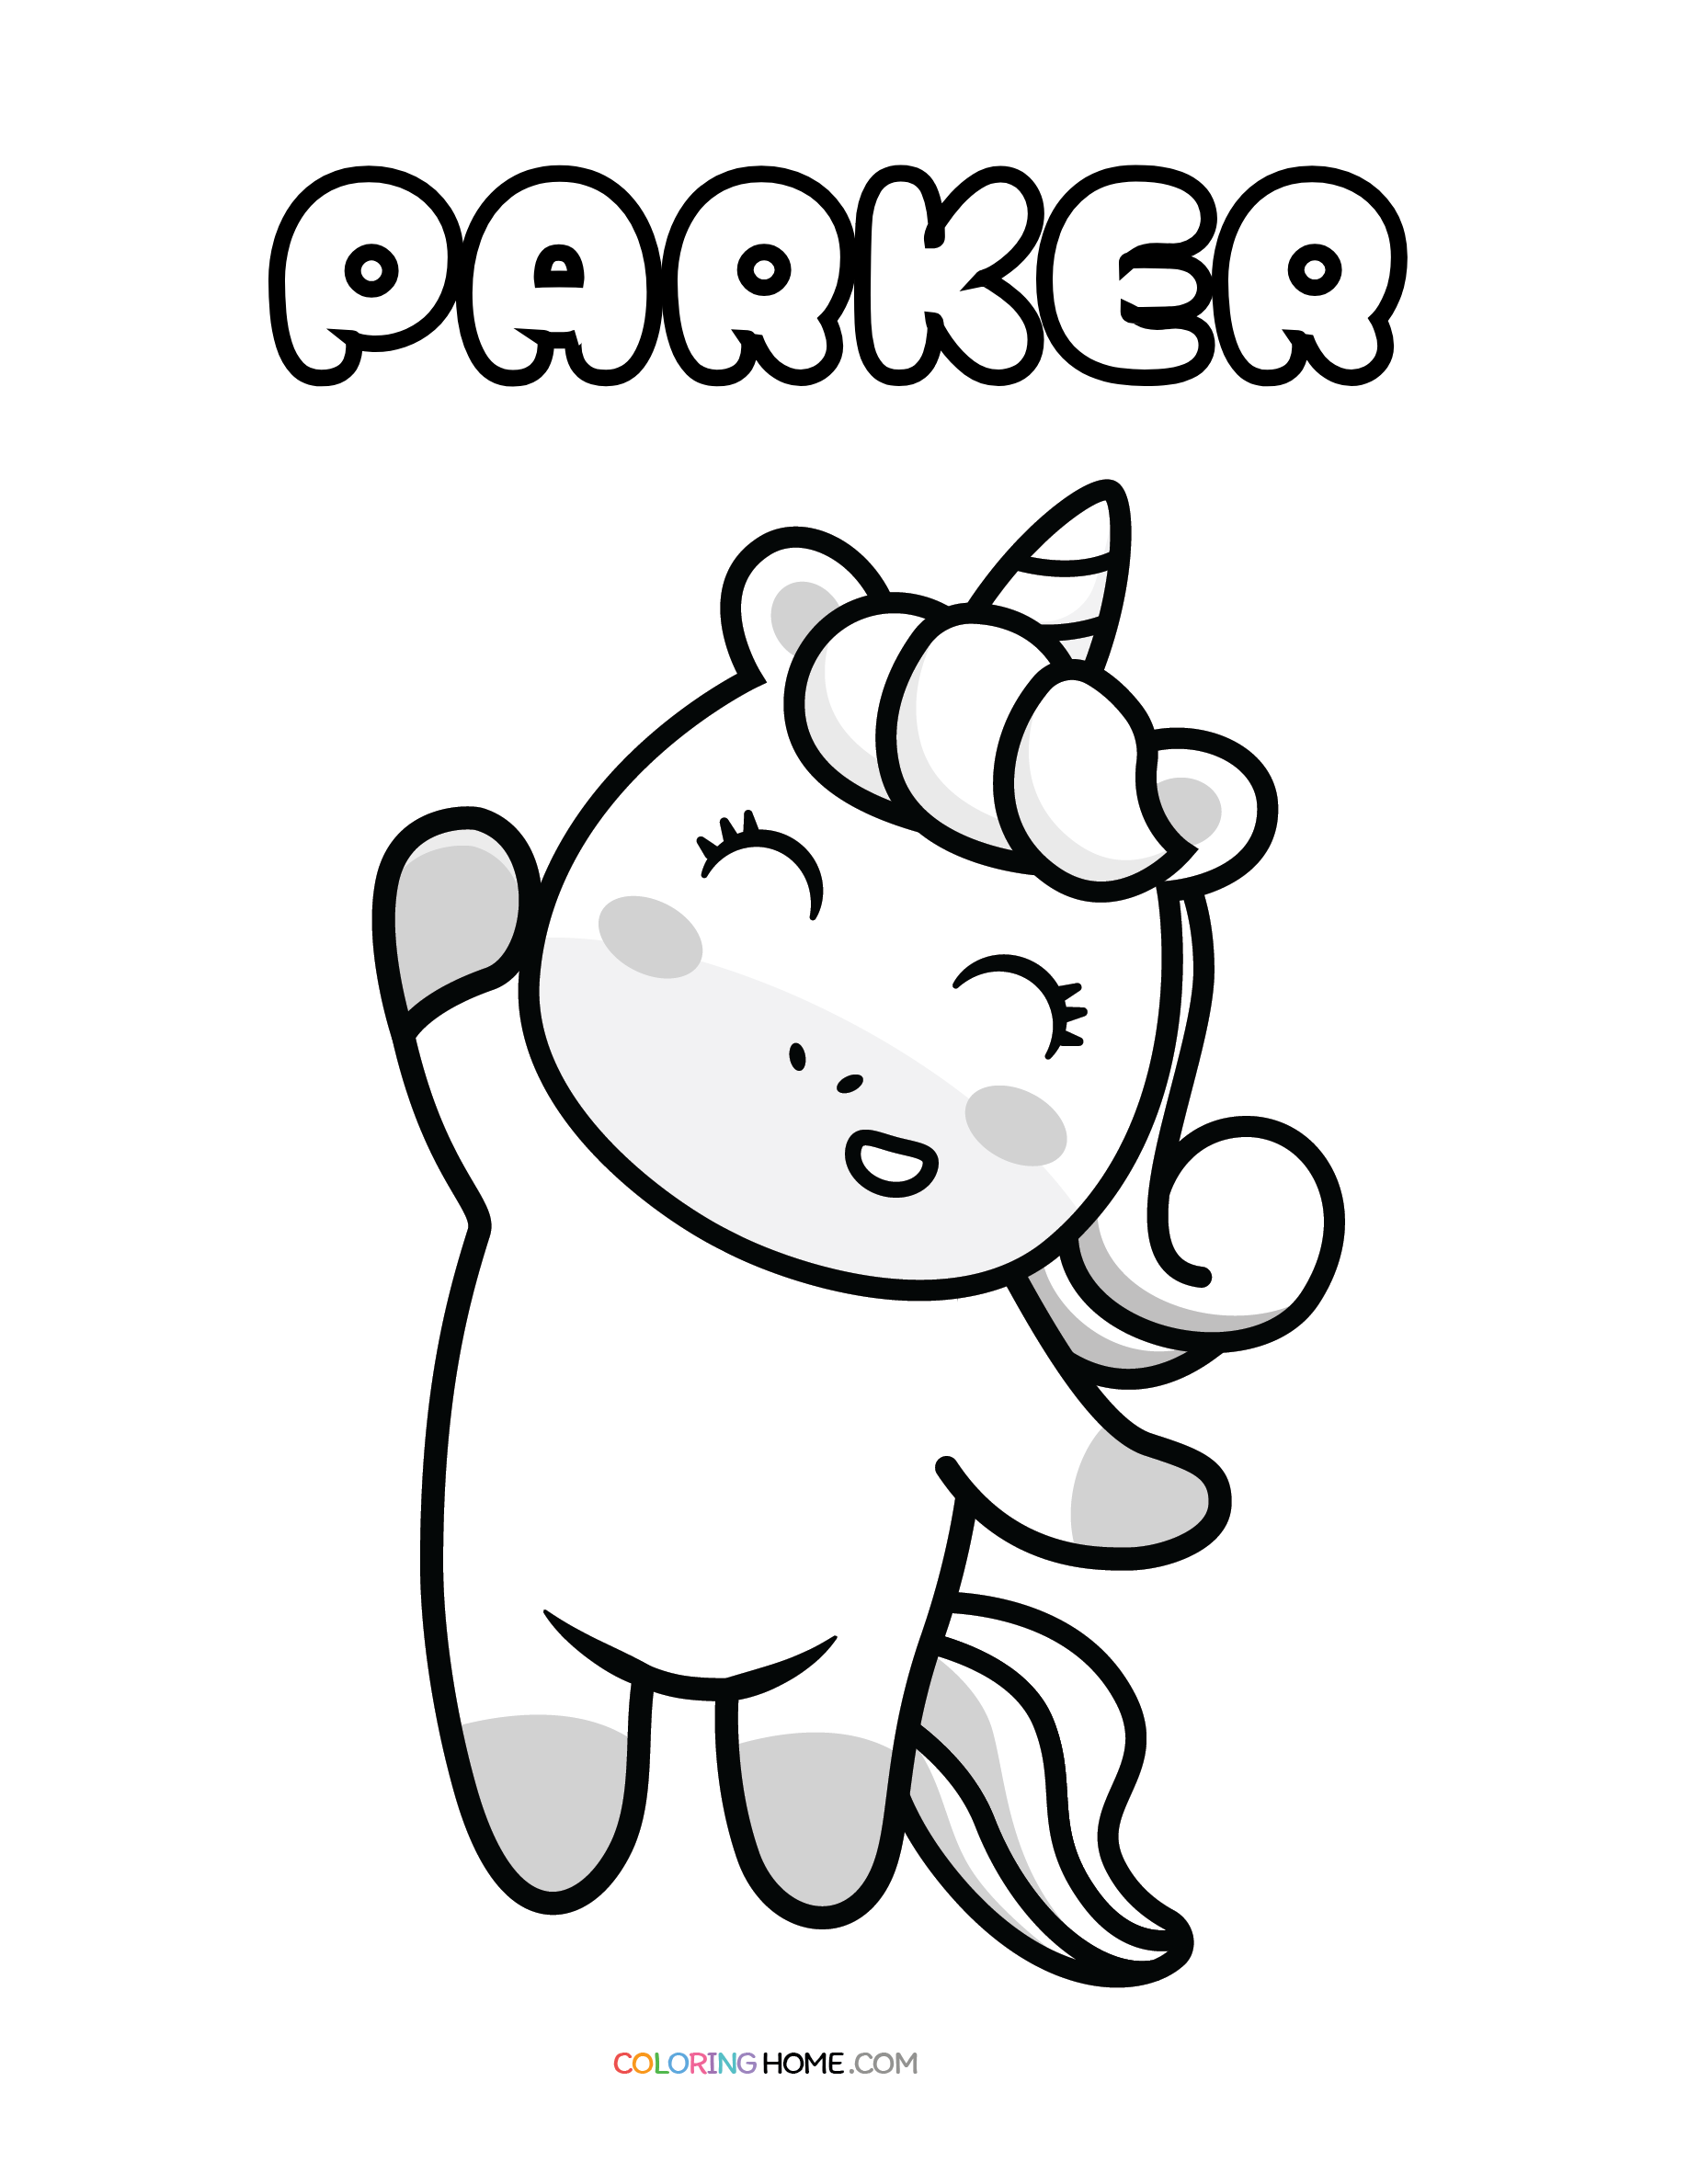 Parker unicorn coloring page